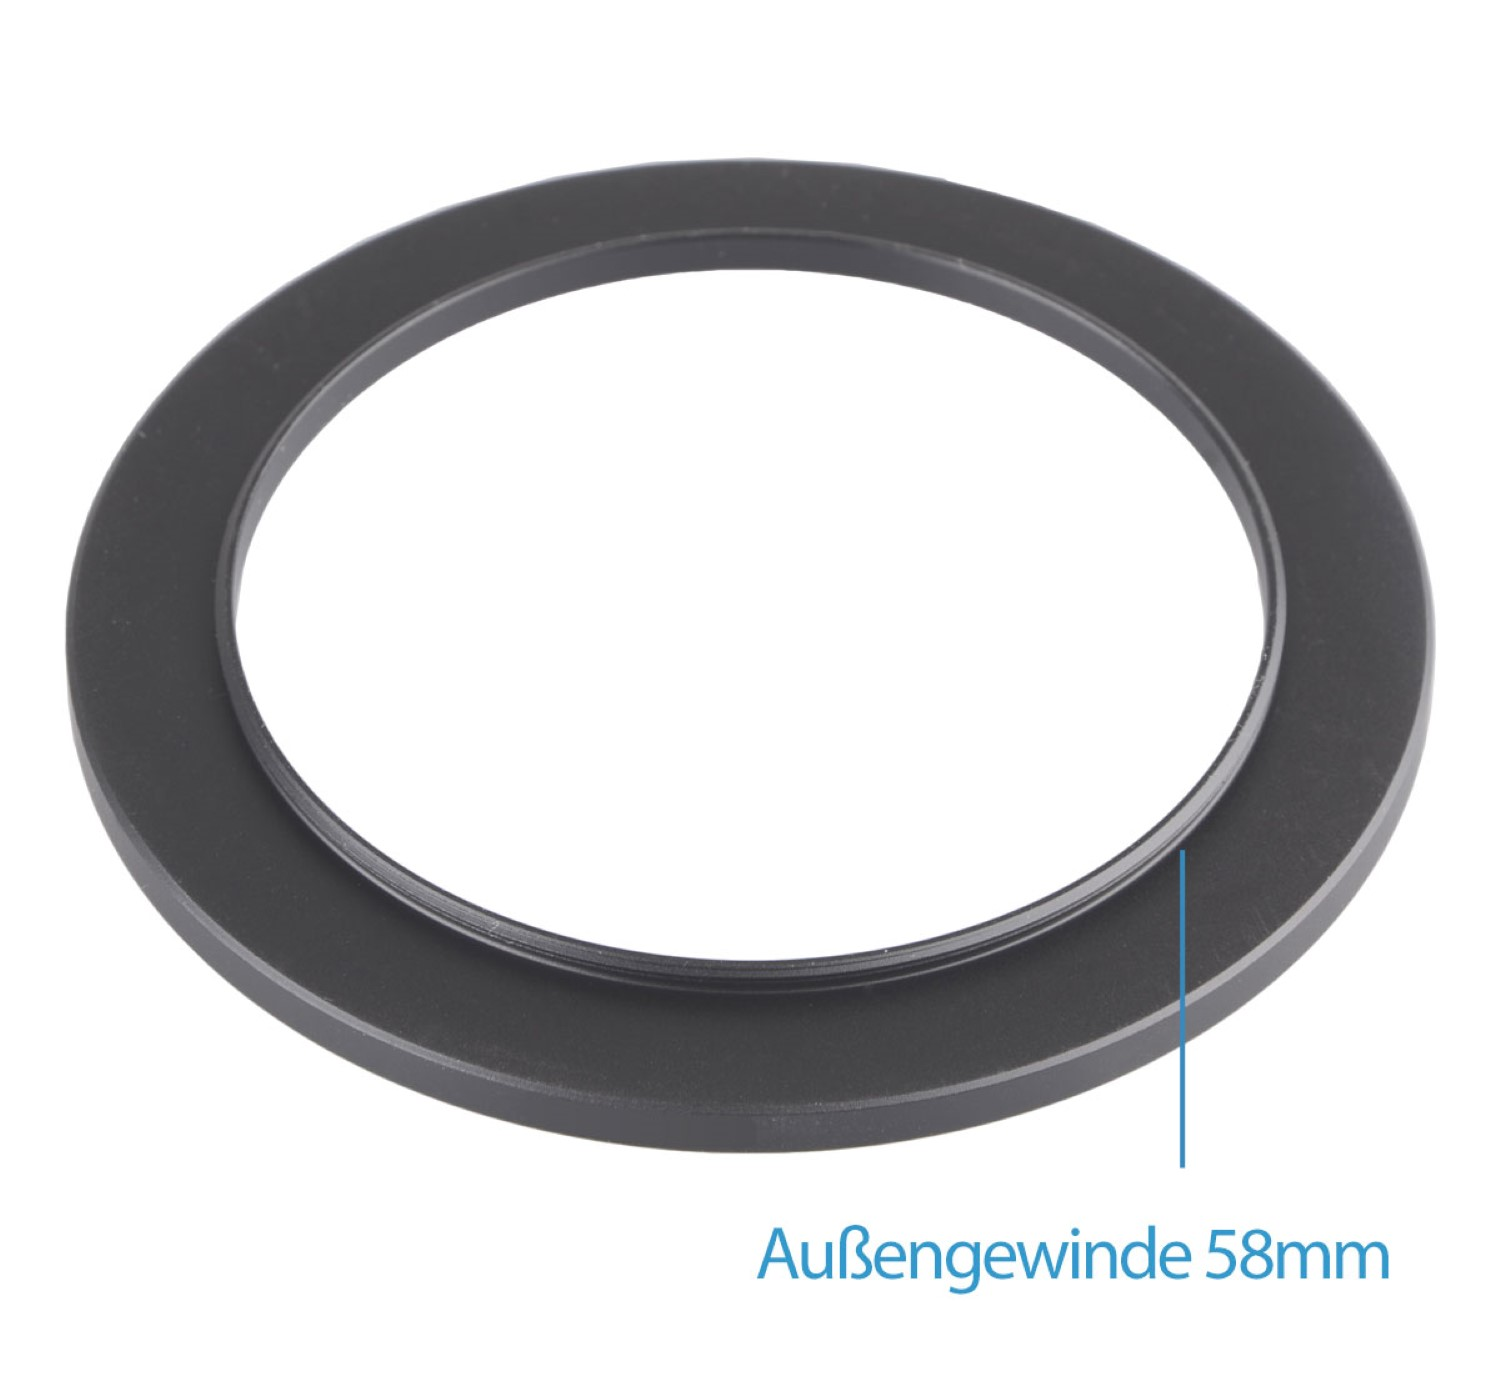 AYEX Step-Up Ring, Black, Objektive passend Adapter, Filtergewinde für mit